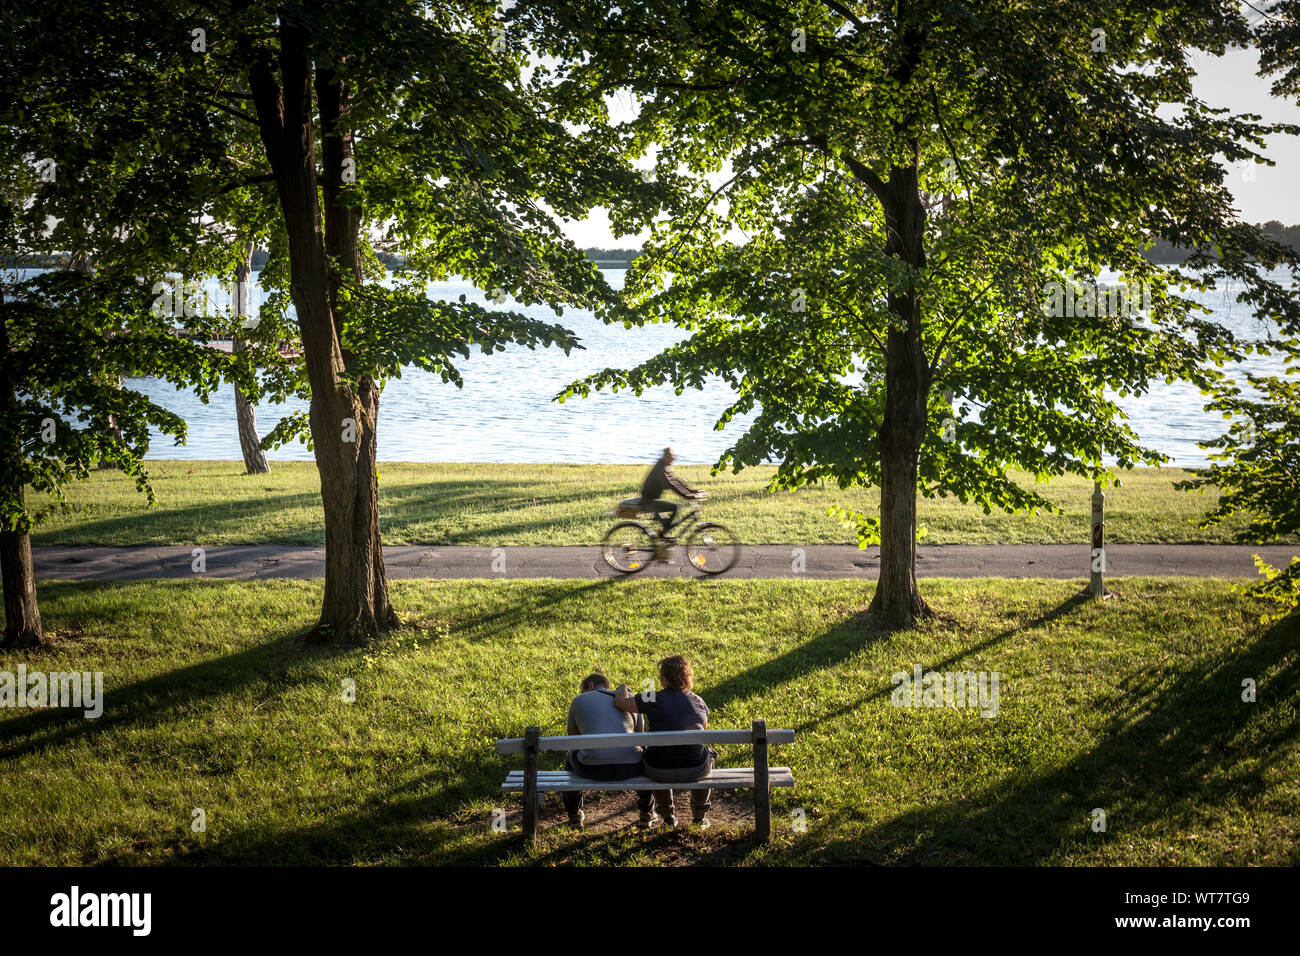 La Palice, SERBIE - 1 juillet 2018 : cycliste passant par sur la côte du lac Palic avec des gens assis sur un banc de Subotica, Serbie, avec une pelouse verte en Banque D'Images